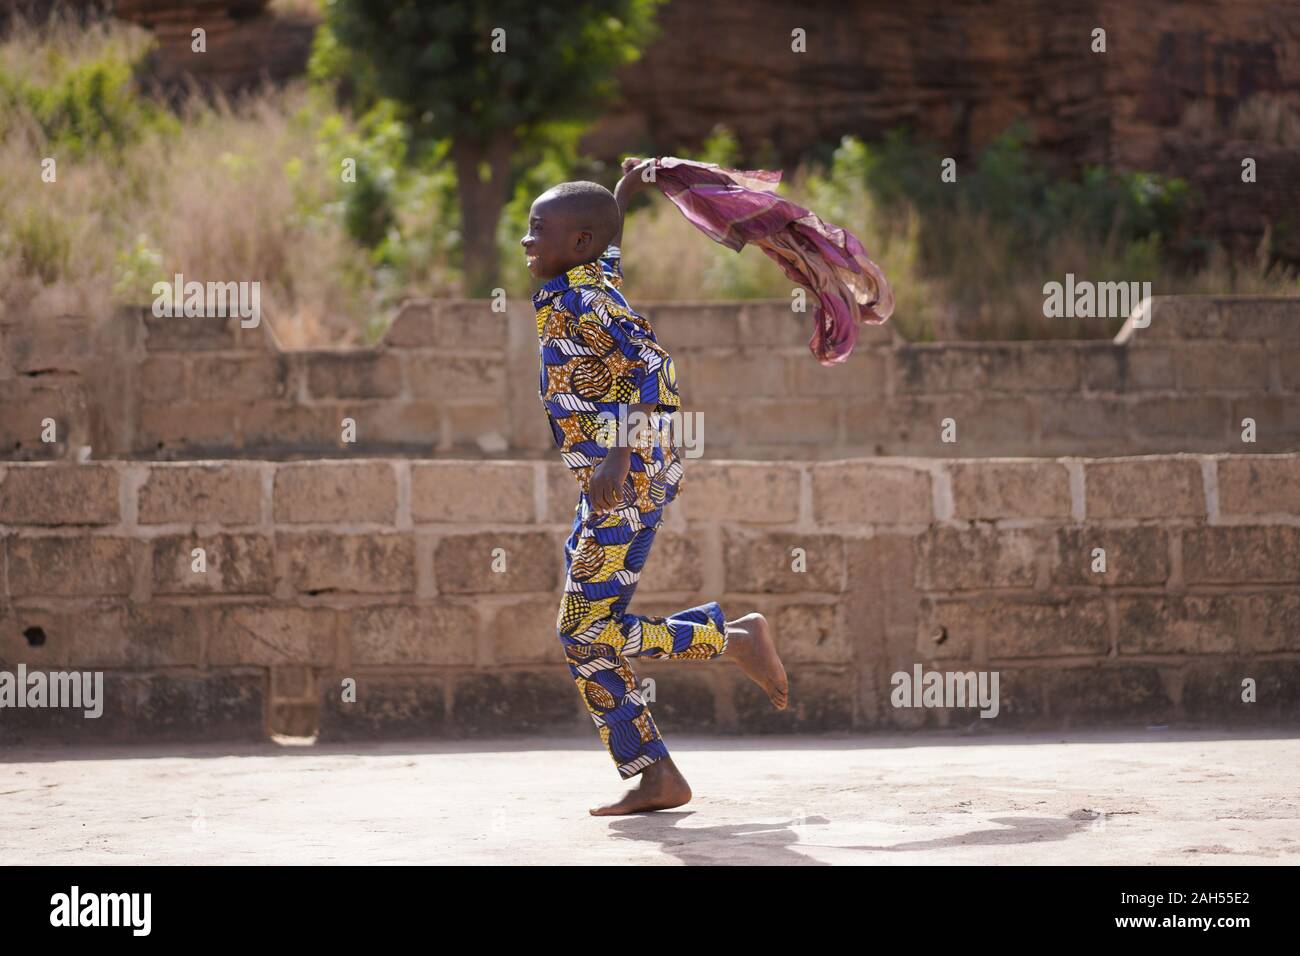 Smiling Little Boy en tenue traditionnelle africaine en plein air de jeu avec un foulard Violet Banque D'Images